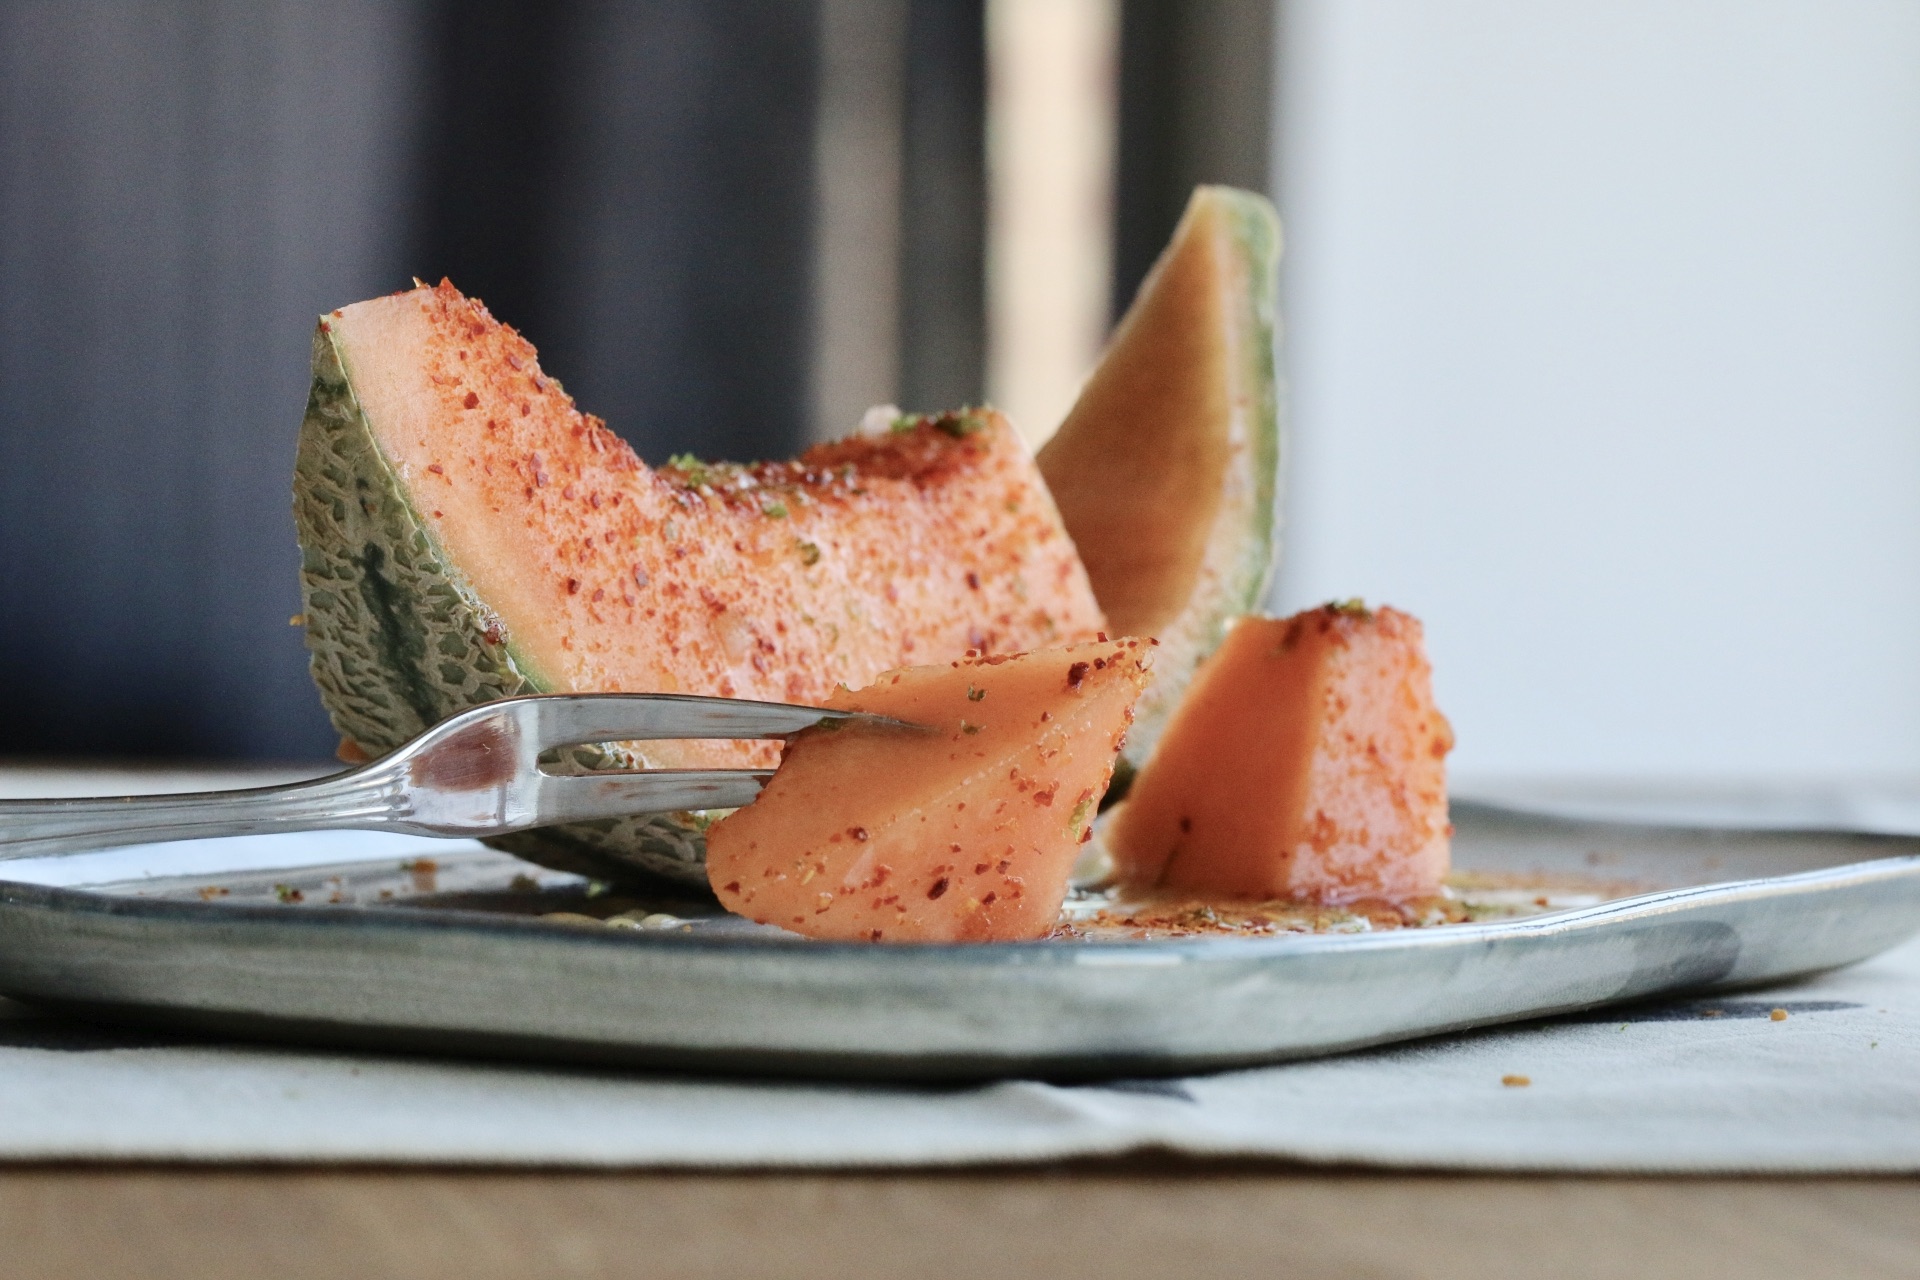 Nätmelon (cantaloupe) med spännande smaker